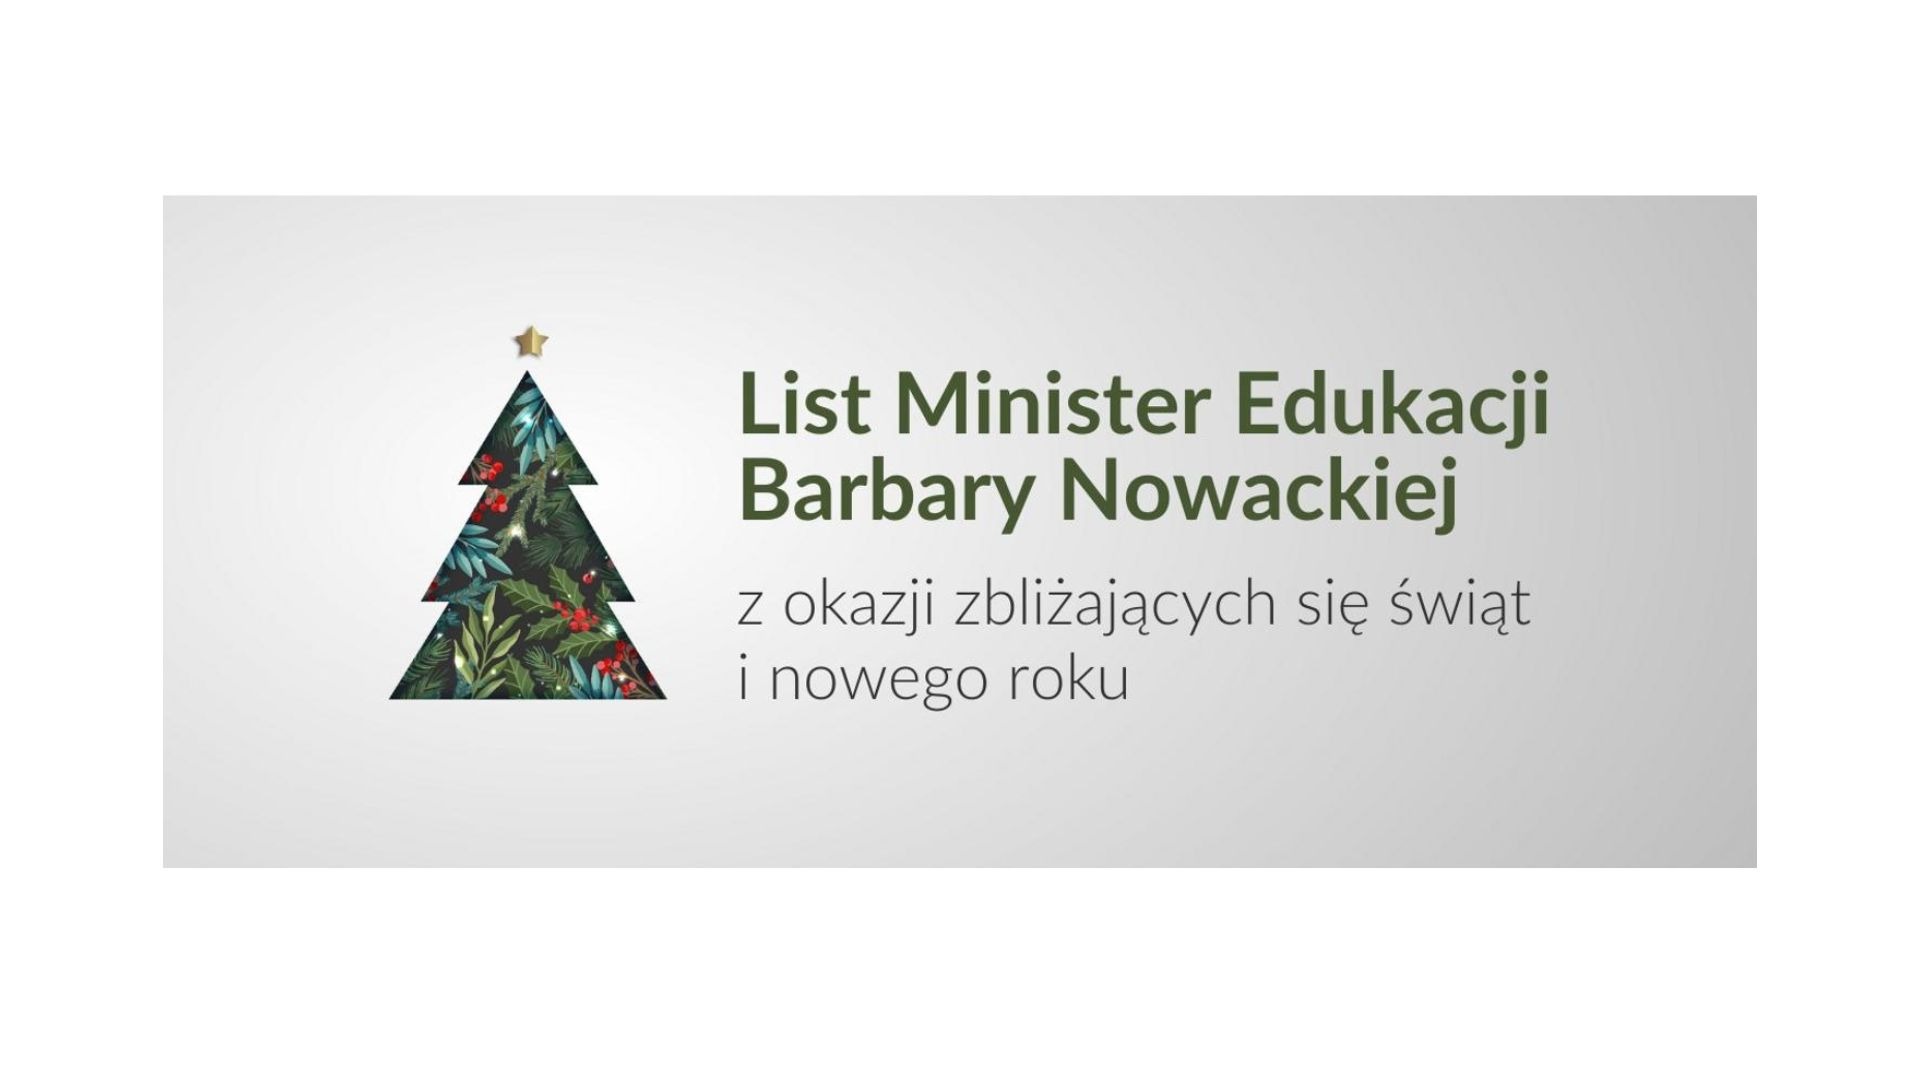 List Minister Edukacji z okazji zbliżających się świąt i nowego roku - Obrazek 1